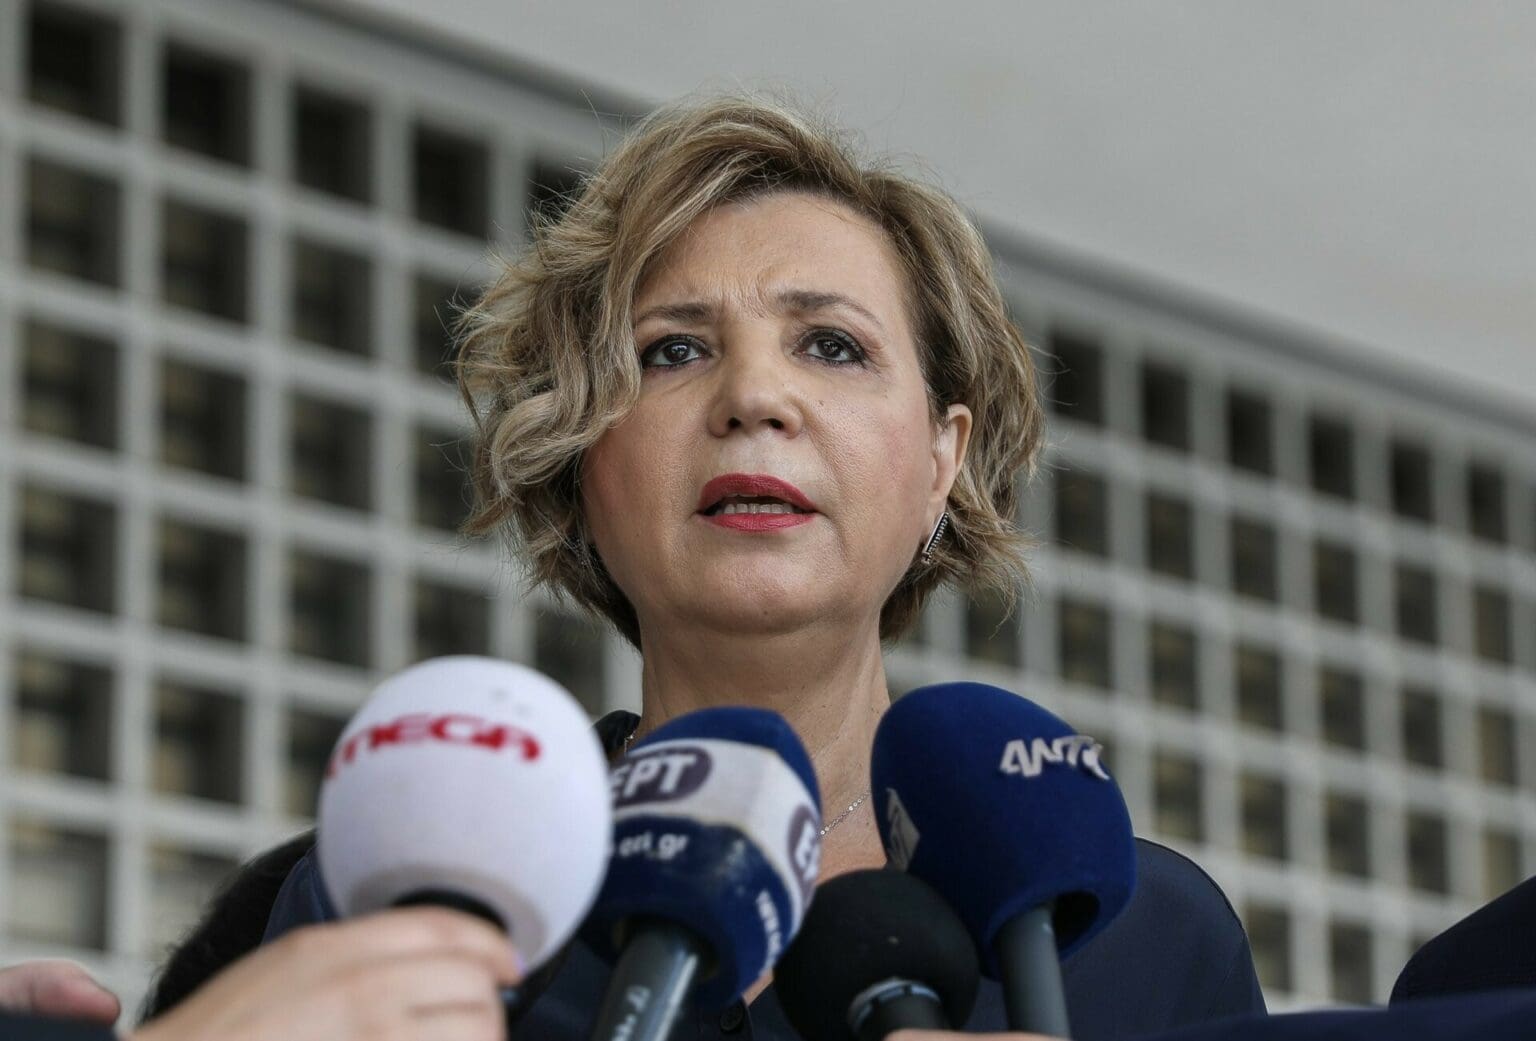 Ολγα Γεροβασίλη - «Αδειασαν» τους τραπεζικούς της λογαριασμούς. - Επίθεση χάκερς με «μήτρα» το Predator καταγγέλλει η τέως υπουργός